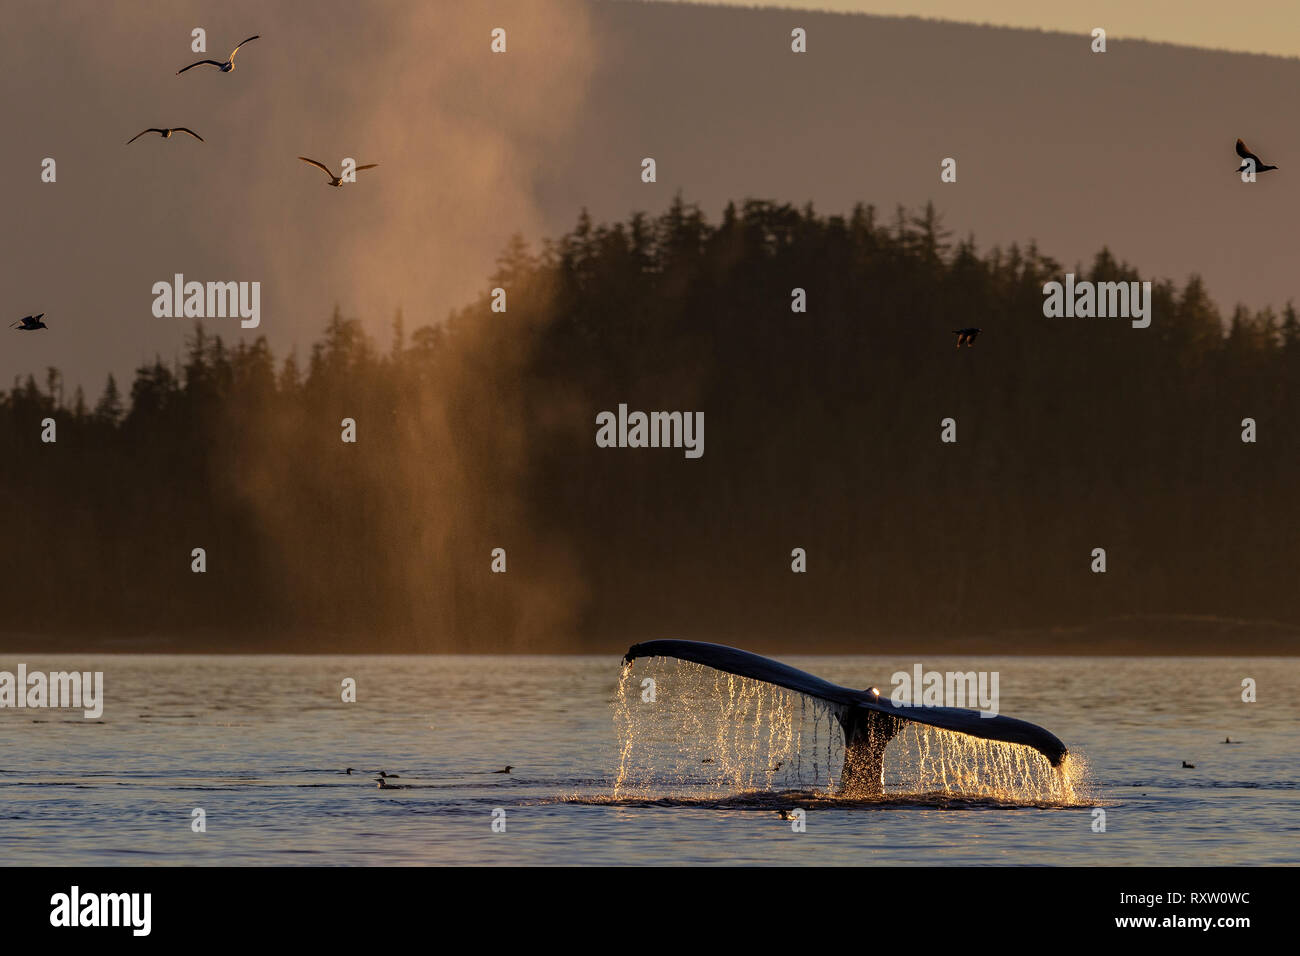 Tiempo de alimentación. Ballenas jorobadas con gaviotas durante una tranquila puesta de sol en Blackfish Sound, Territorio de las primeras Naciones, frente a la isla de Vancouver, Columbia Británica, Canadá. Foto de stock